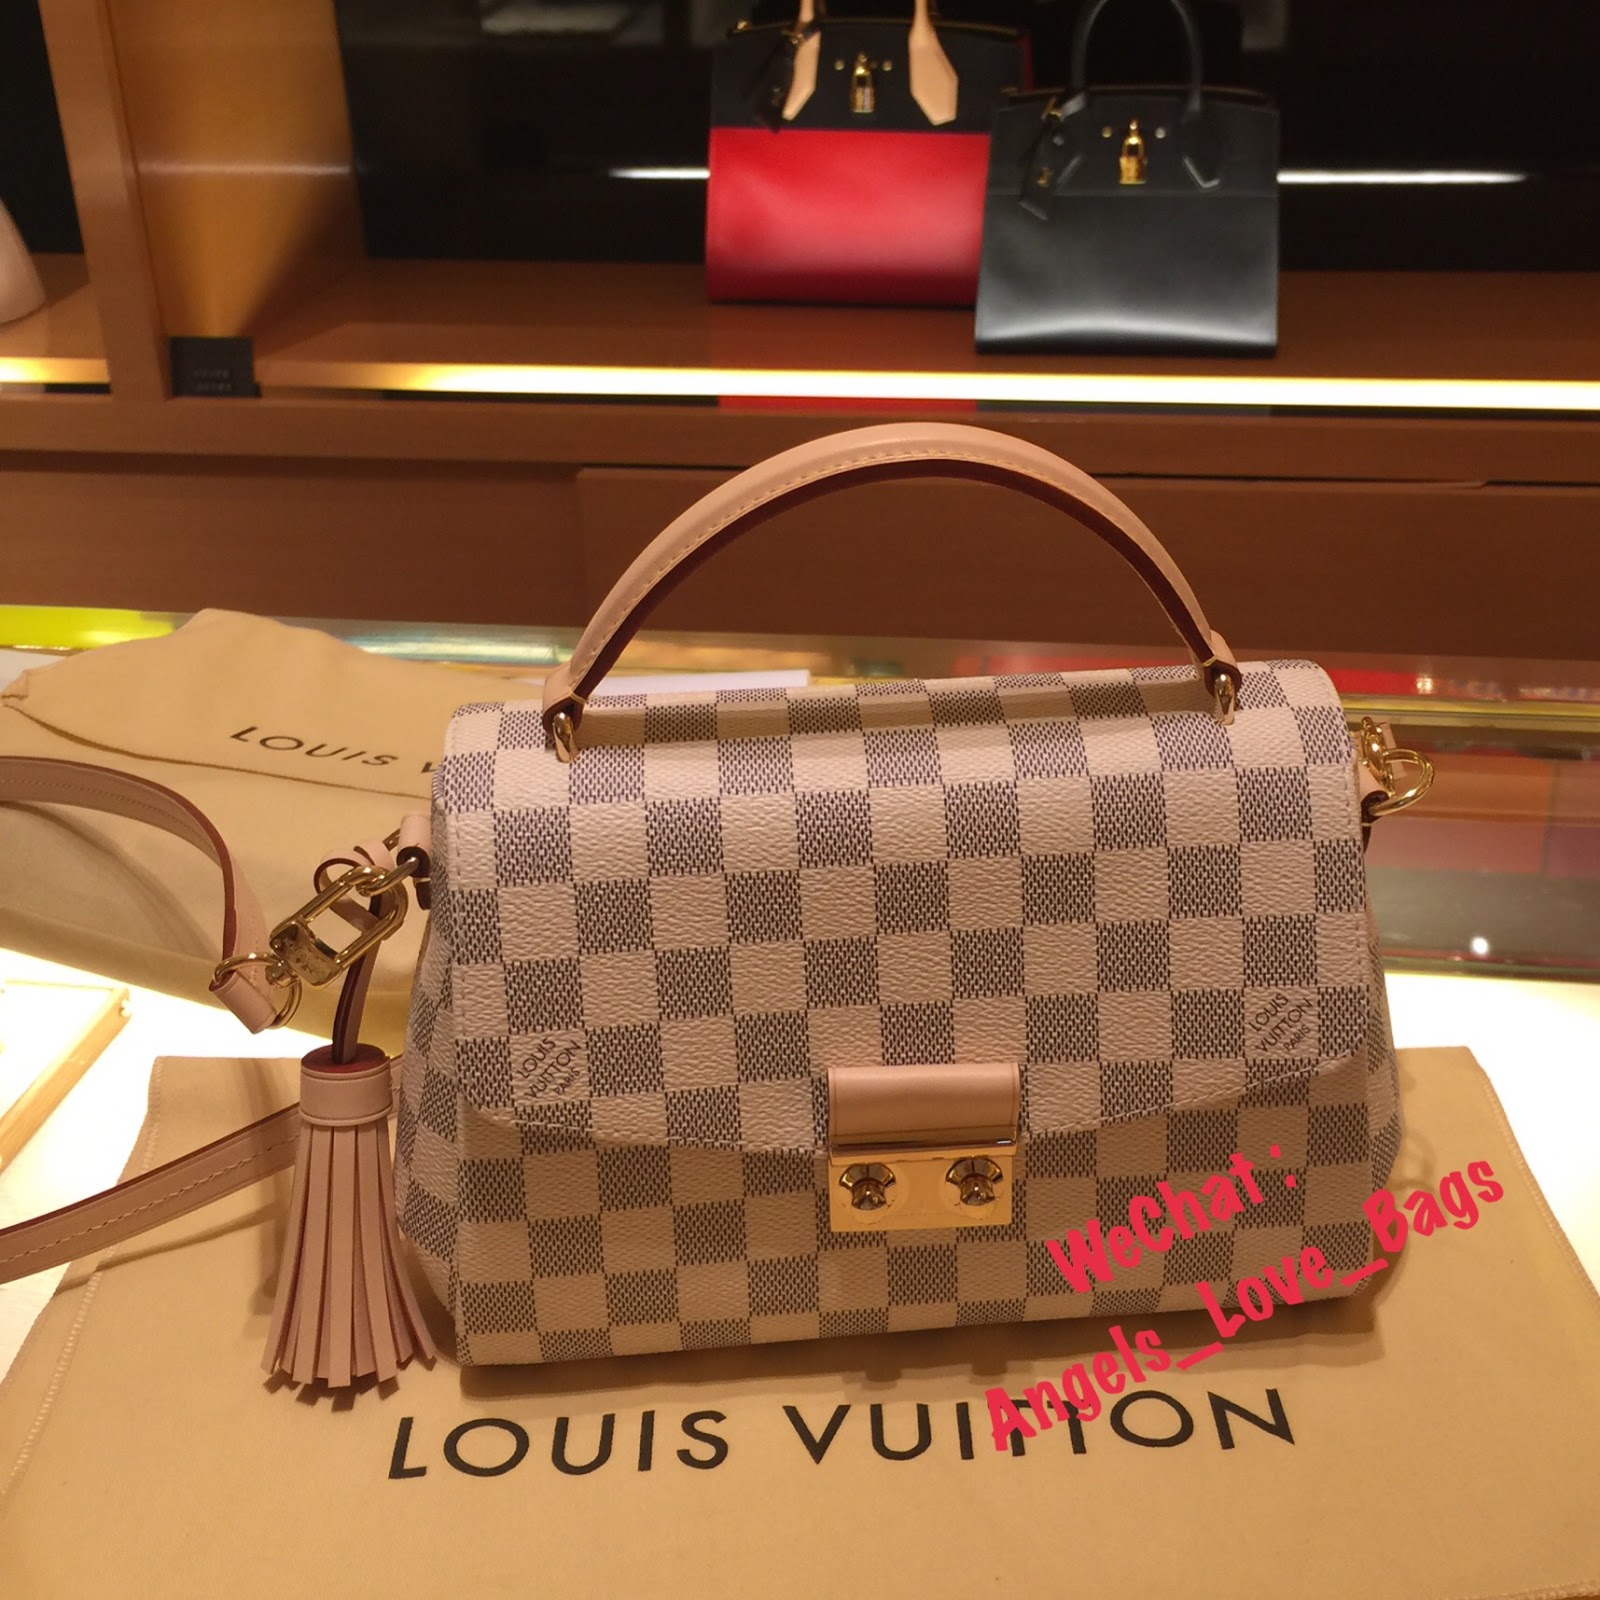 Angels Love Bags - The Fashion Buyer: LOUIS VUITTON Croisette Damier Azur